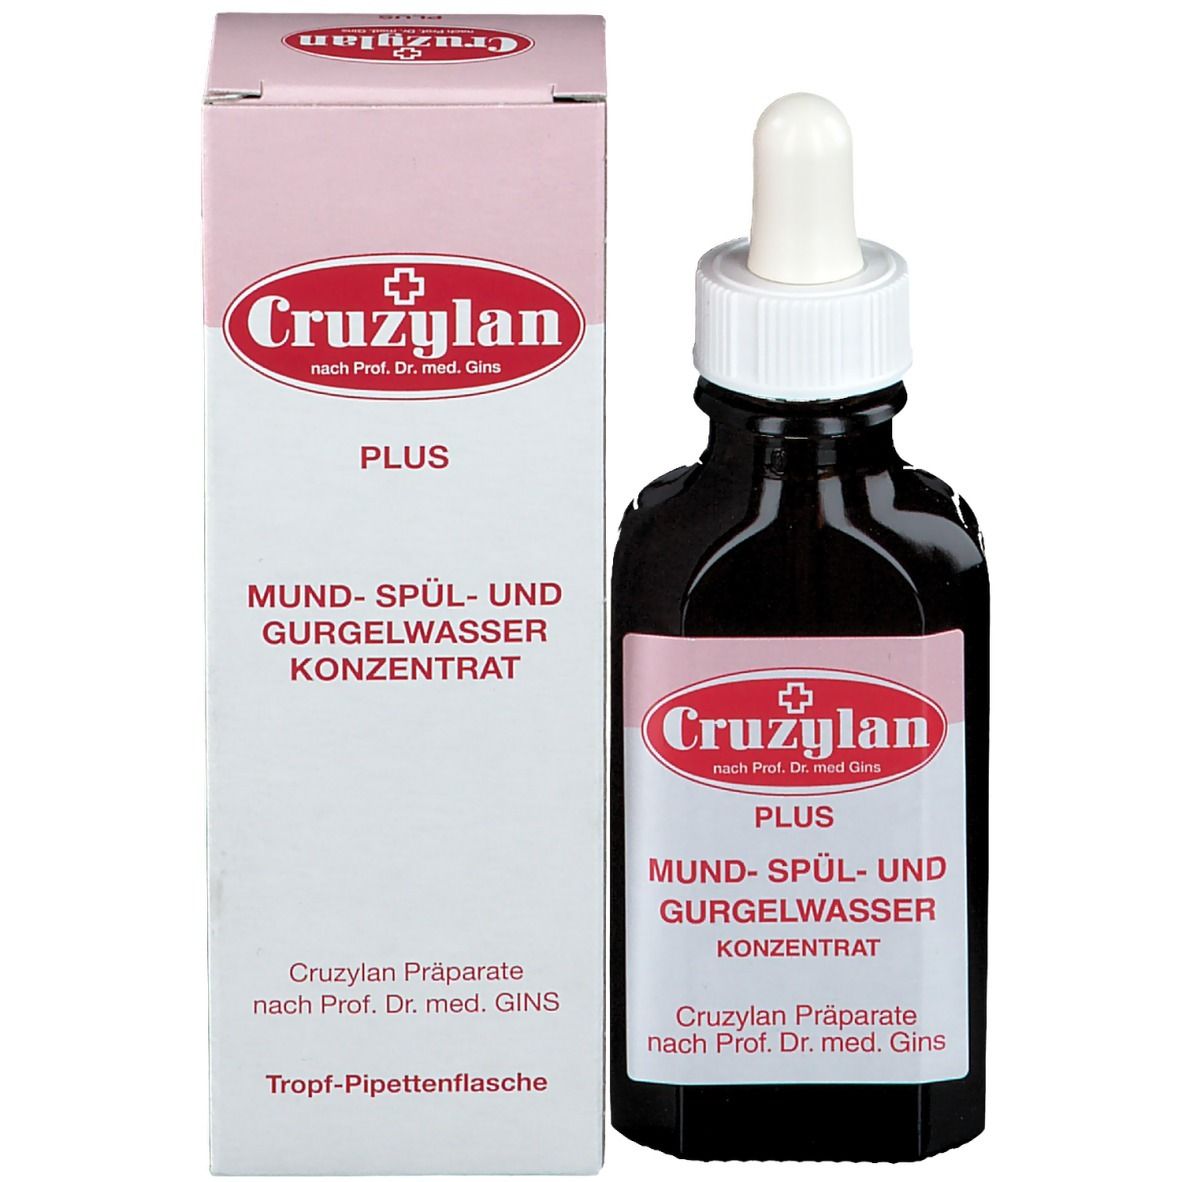 Cruzylan Plus Mund- Spül- und Gurgelwasserkonzentrat mit Pipette